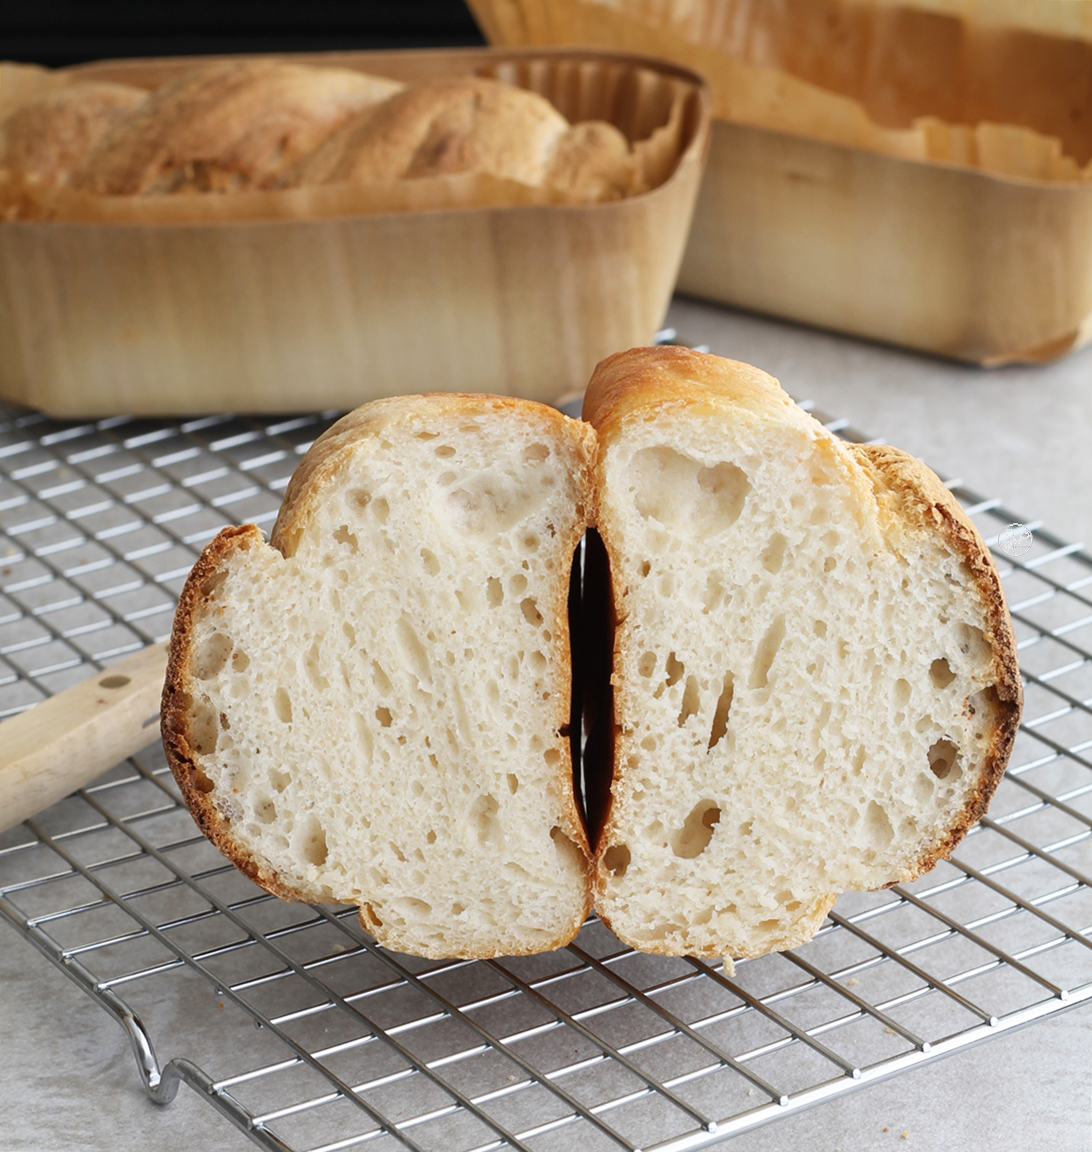 Treccia di pane al latte senza glutine - La Cassata Celiaca